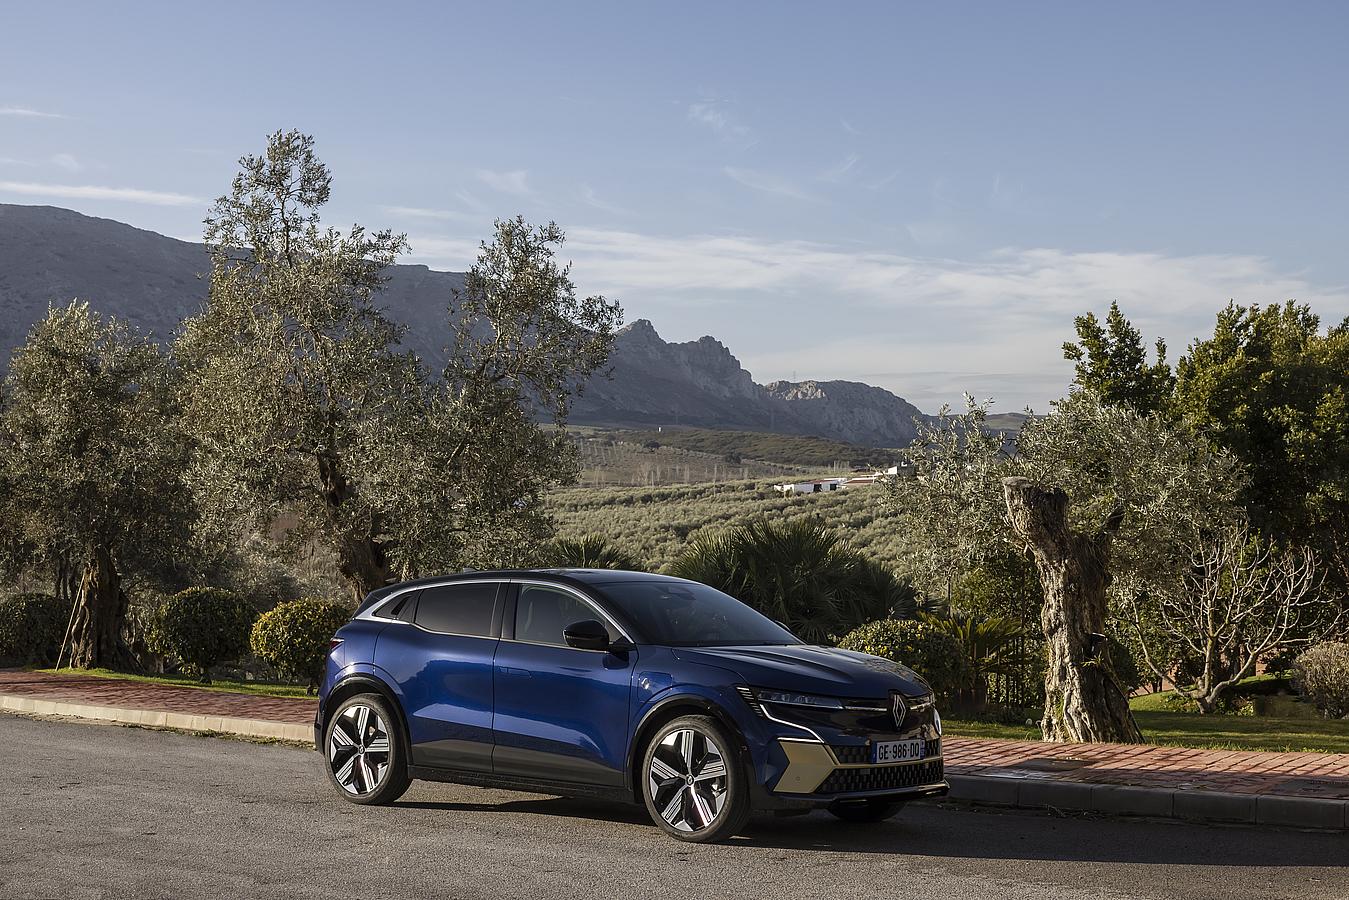 Nuevo Renault Megane E-TECH 100% eléctrico: el SUV con hasta 470 km de autonomía y asistente Google de serie